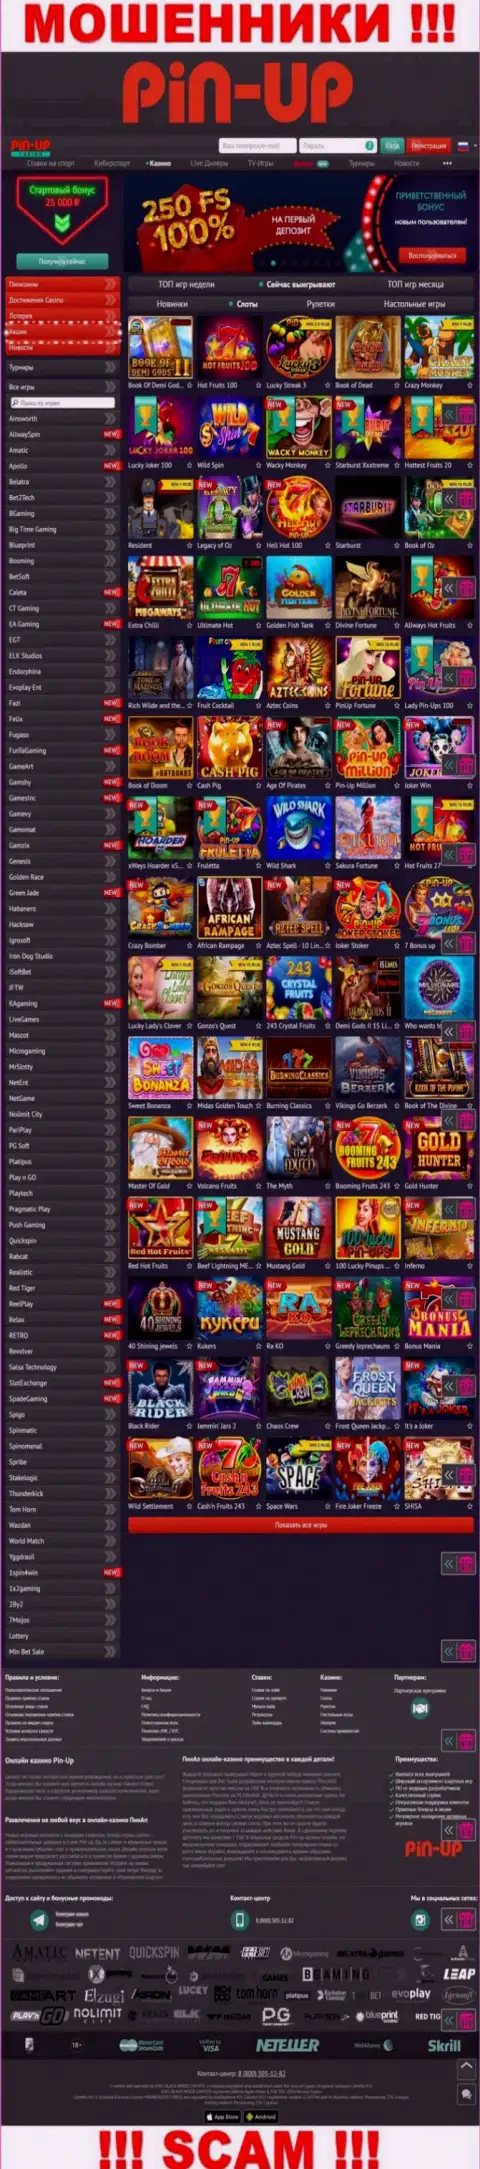 Pin-Up Casino - это официальный web-сайт internet жуликов Пин Ап Казино